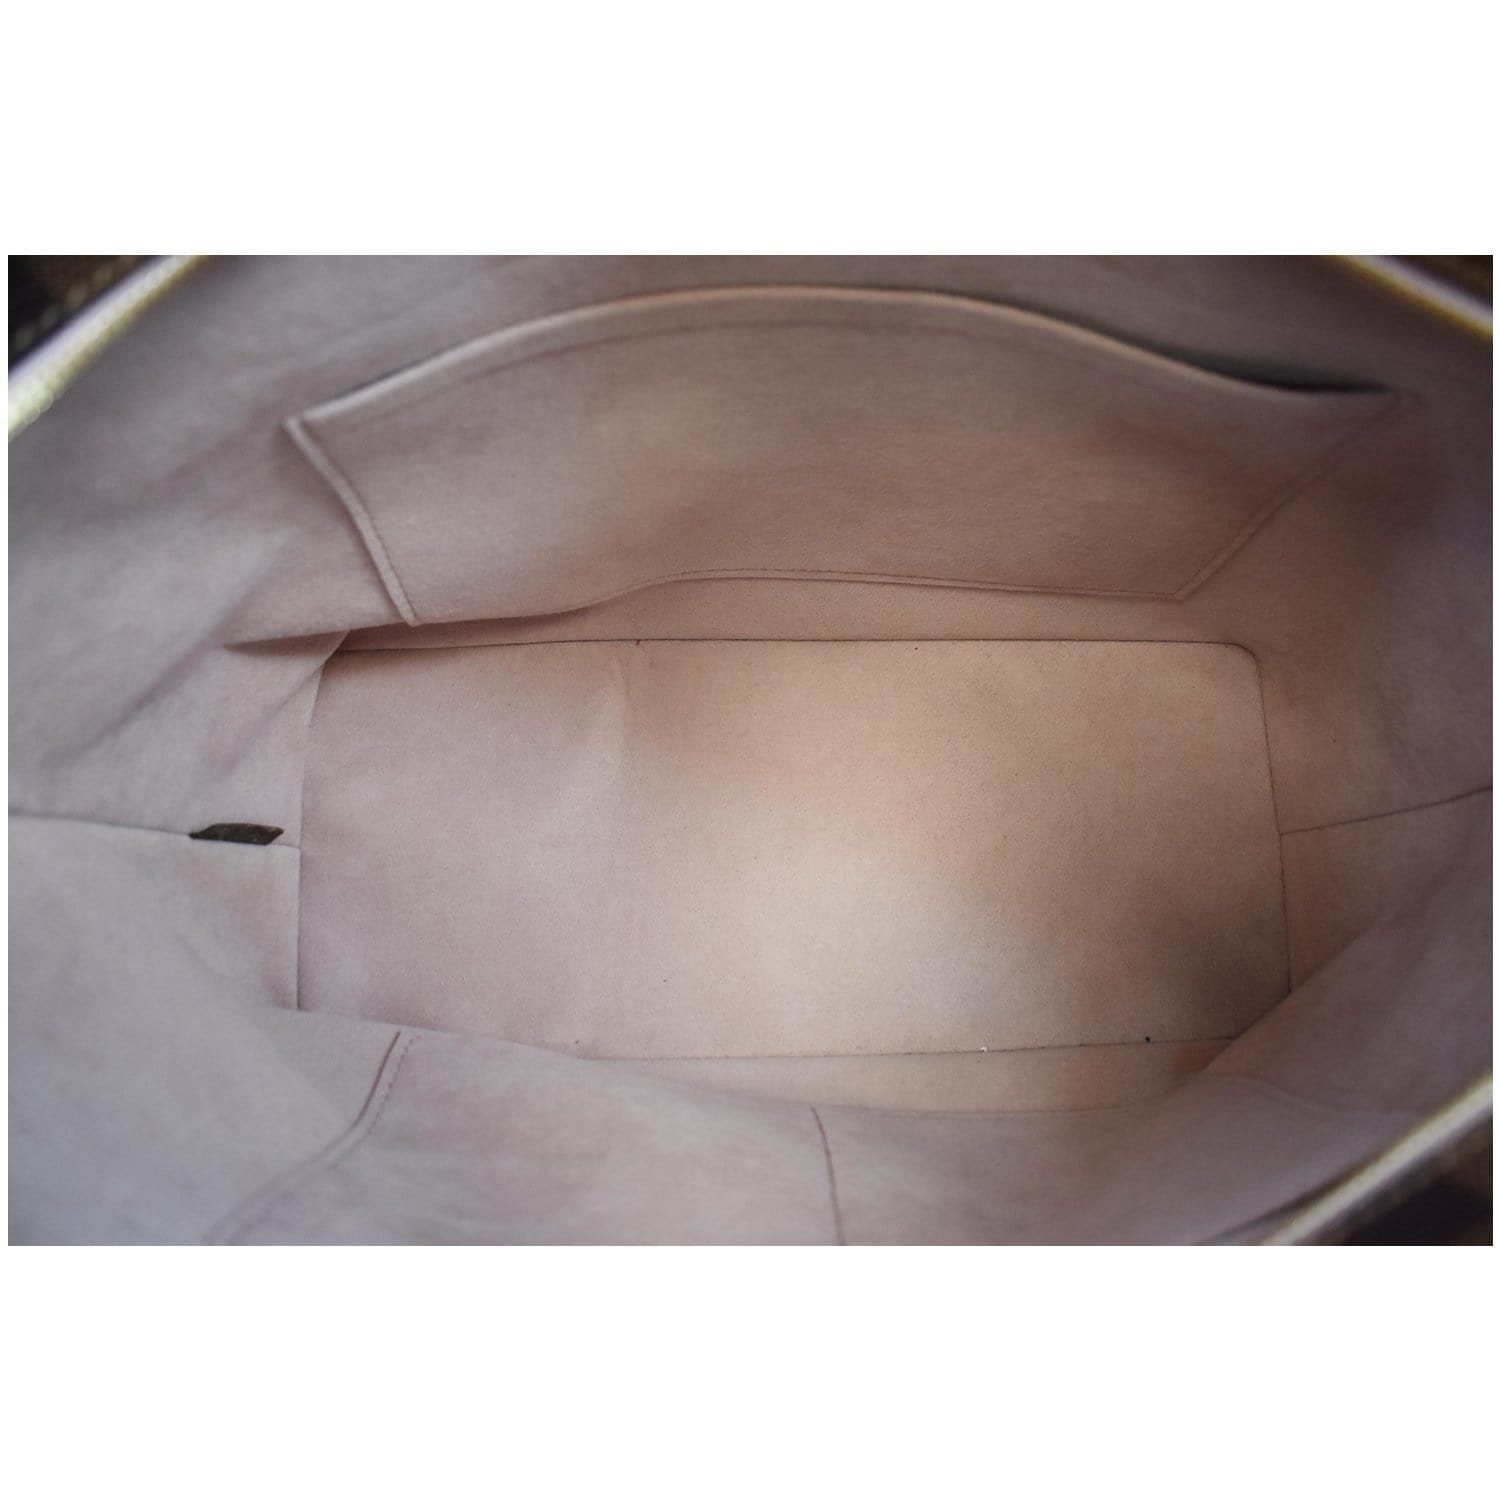 LOUIS VUITTON Shoulder Bag N44244 Damier canvas leather Magnolia Used Women